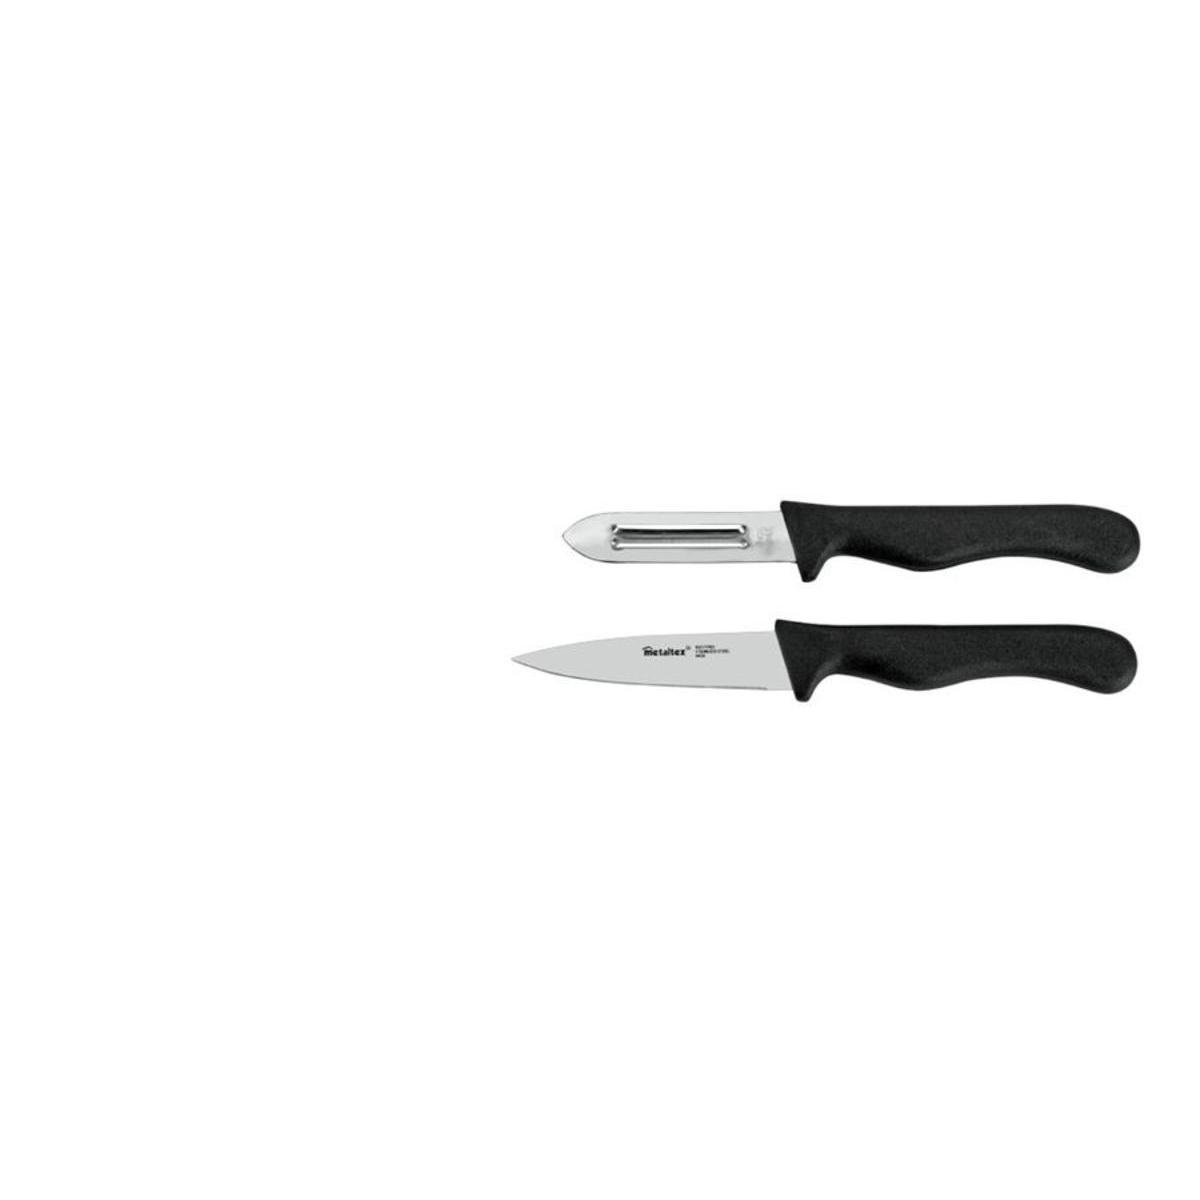 Couteau et éplucheur - Acier inoxydable et plastique - 23,5 x 6,8 x 1,3 cm - Blanc